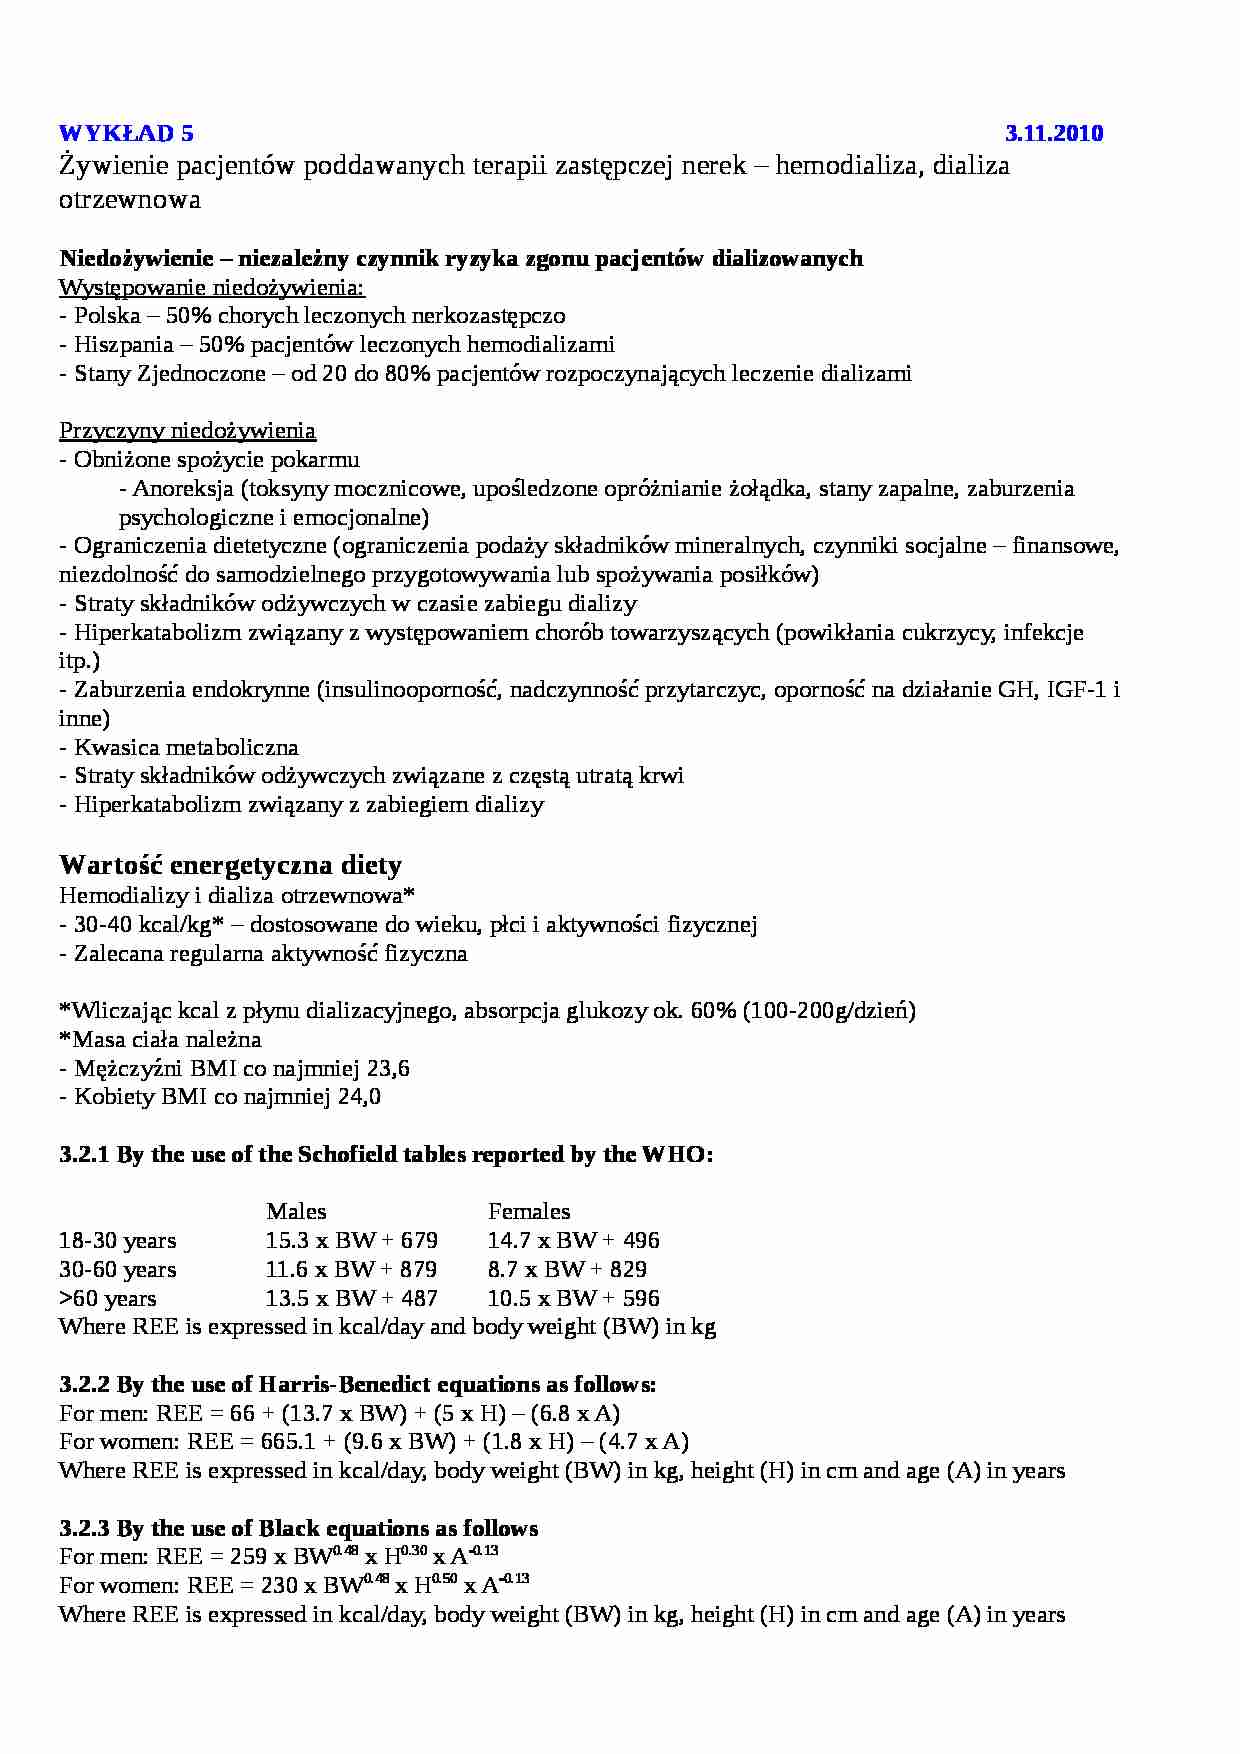 emodializa i dializa otrzewnowa - strona 1